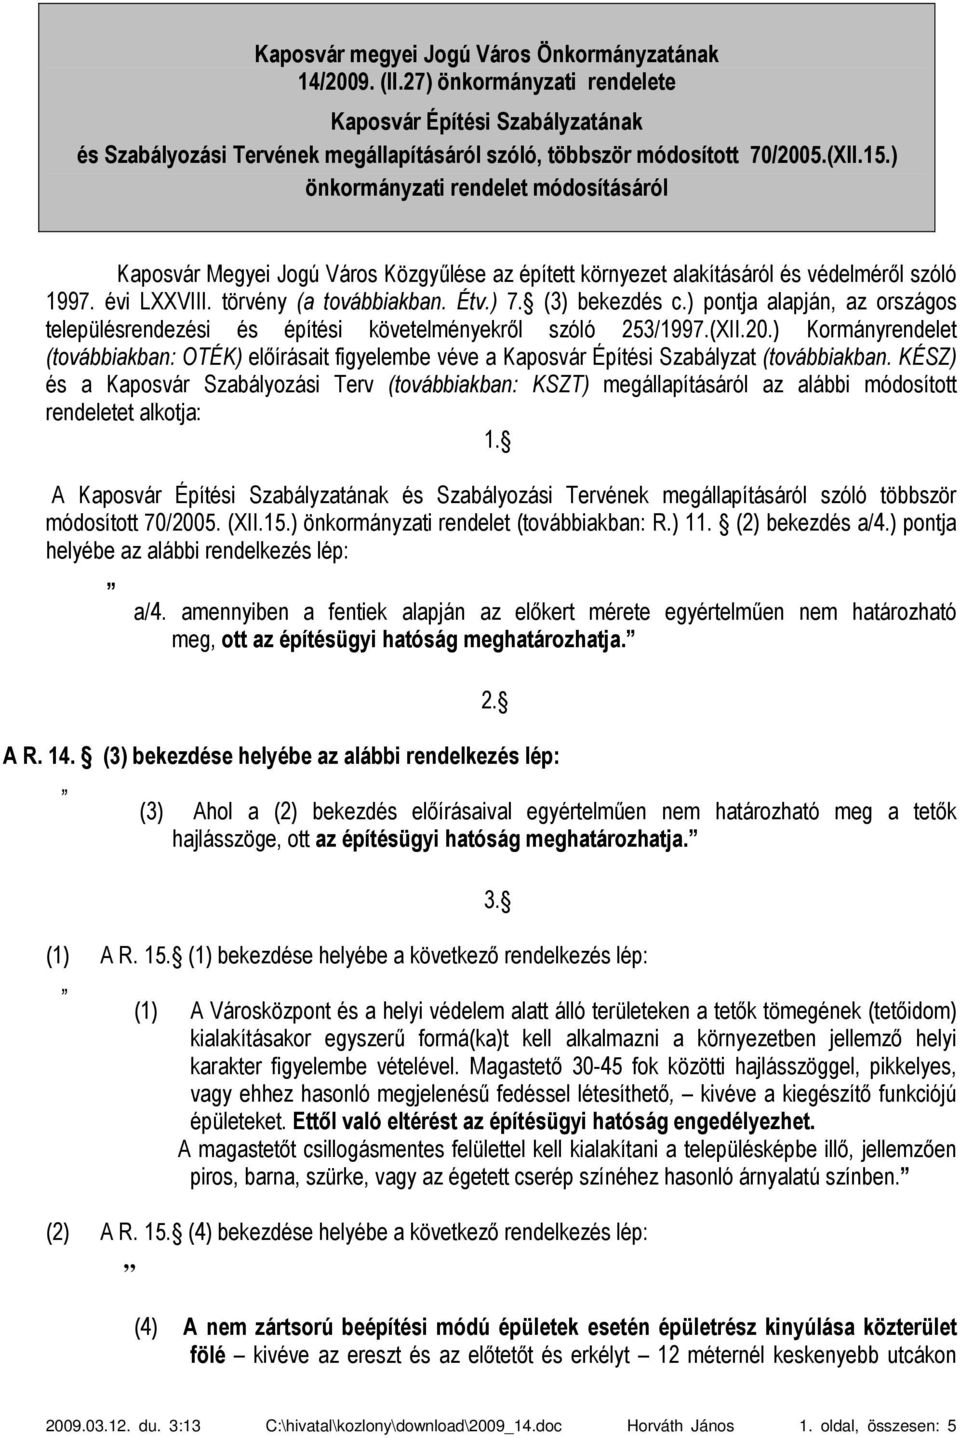 (3) bekezdés c.) pontja alapján, az országos településrendezési és építési követelményekről szóló 253/1997.(XII.20.